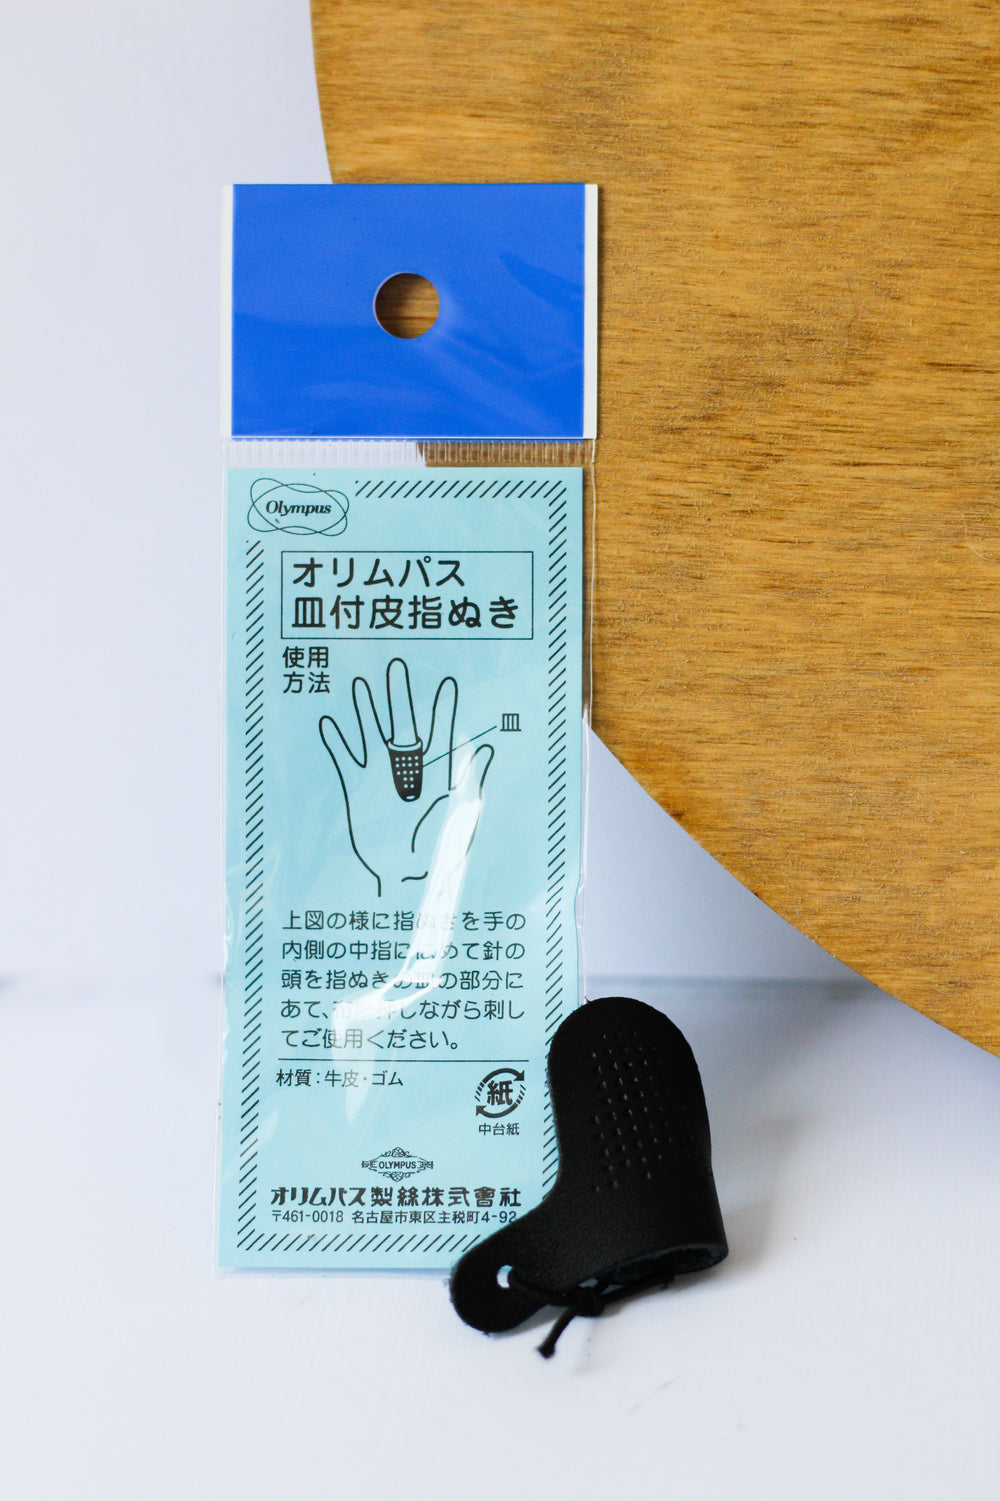  Sashiko Thimble - Olympus Leather Adjustable Thimble